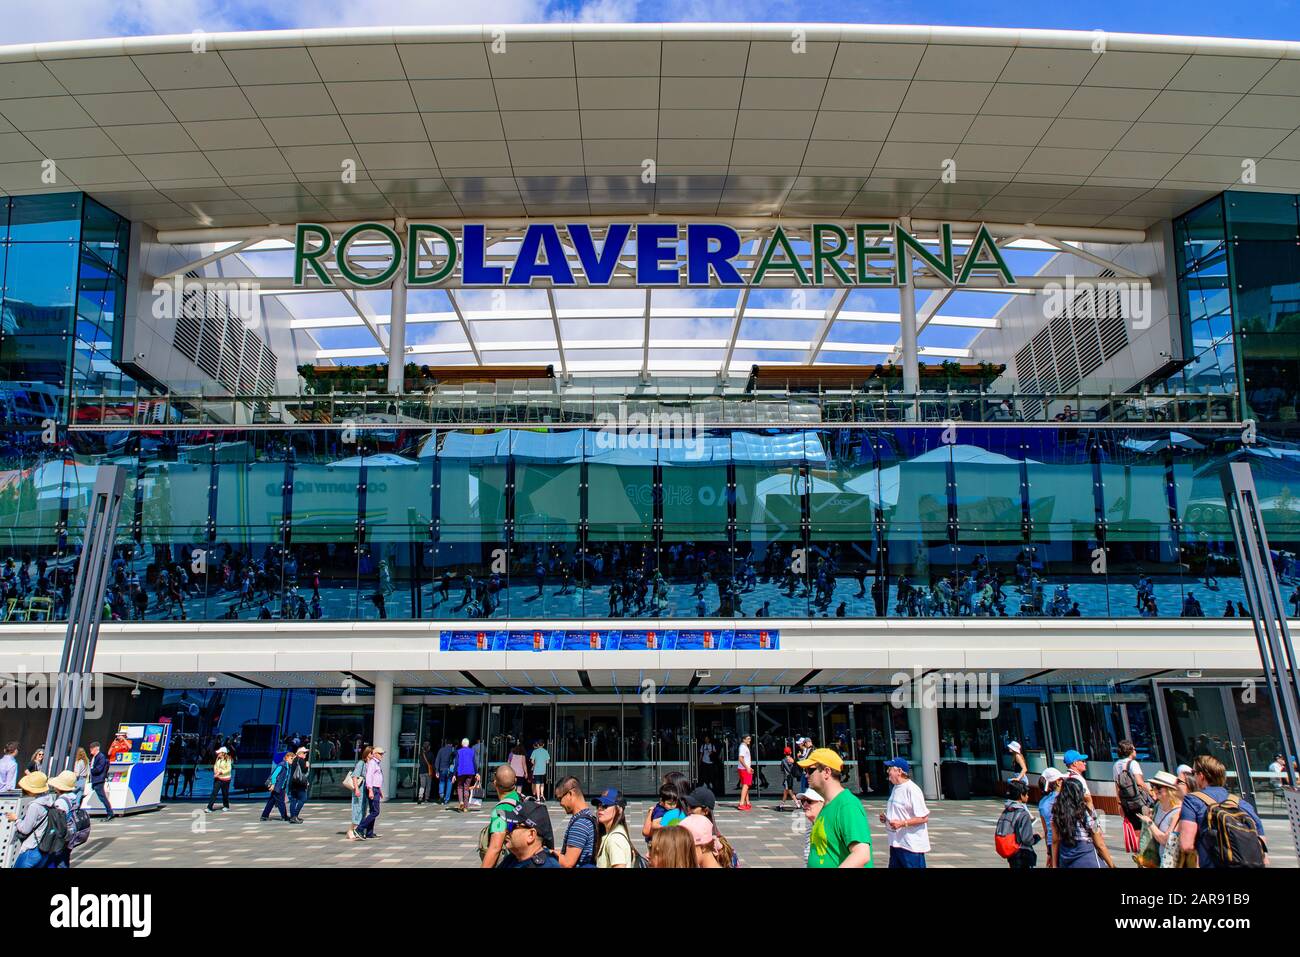 Rod laver Arena pour l'Australian Open 2020, un lieu de tennis au Melbourne Park, Melbourne, Australie Banque D'Images